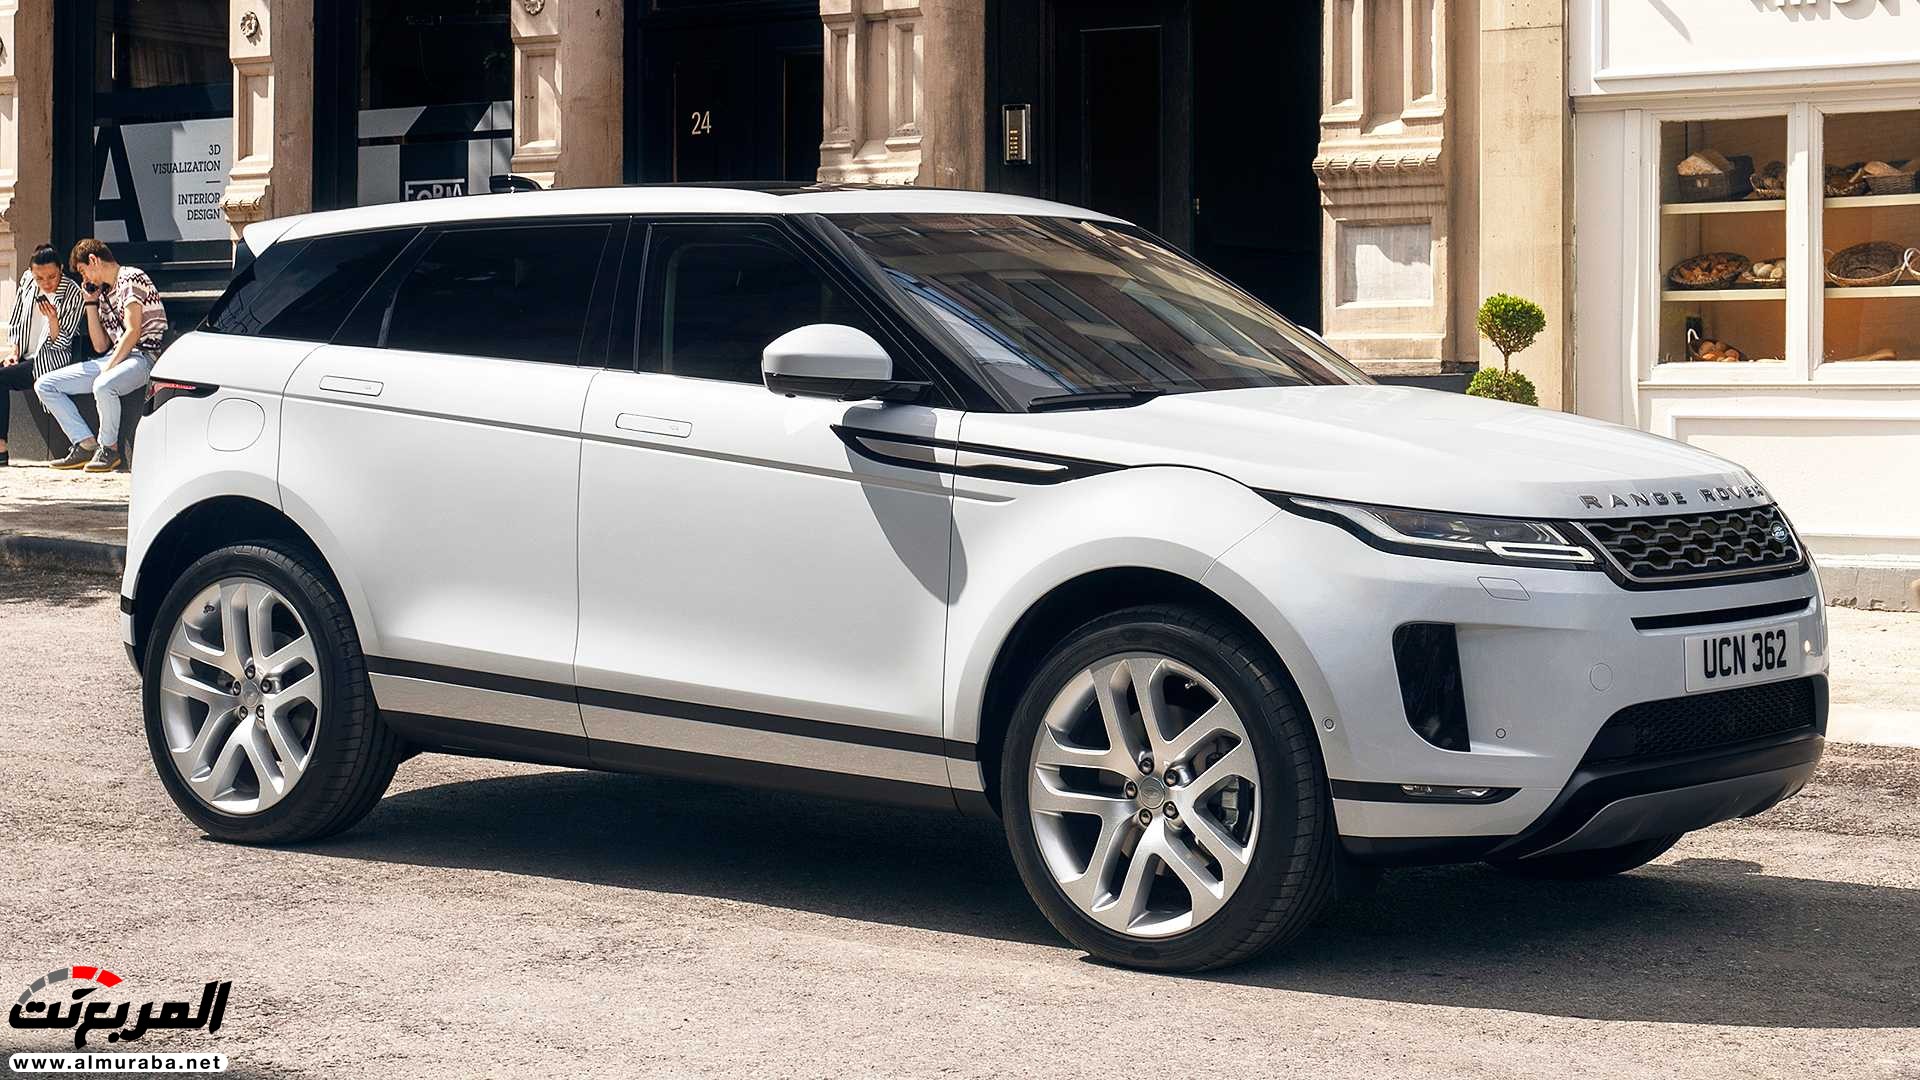 اهم 7 معلومات عن رنج روفر ايفوك 2020 الجديدة كلياً Range Rover Evoque 110